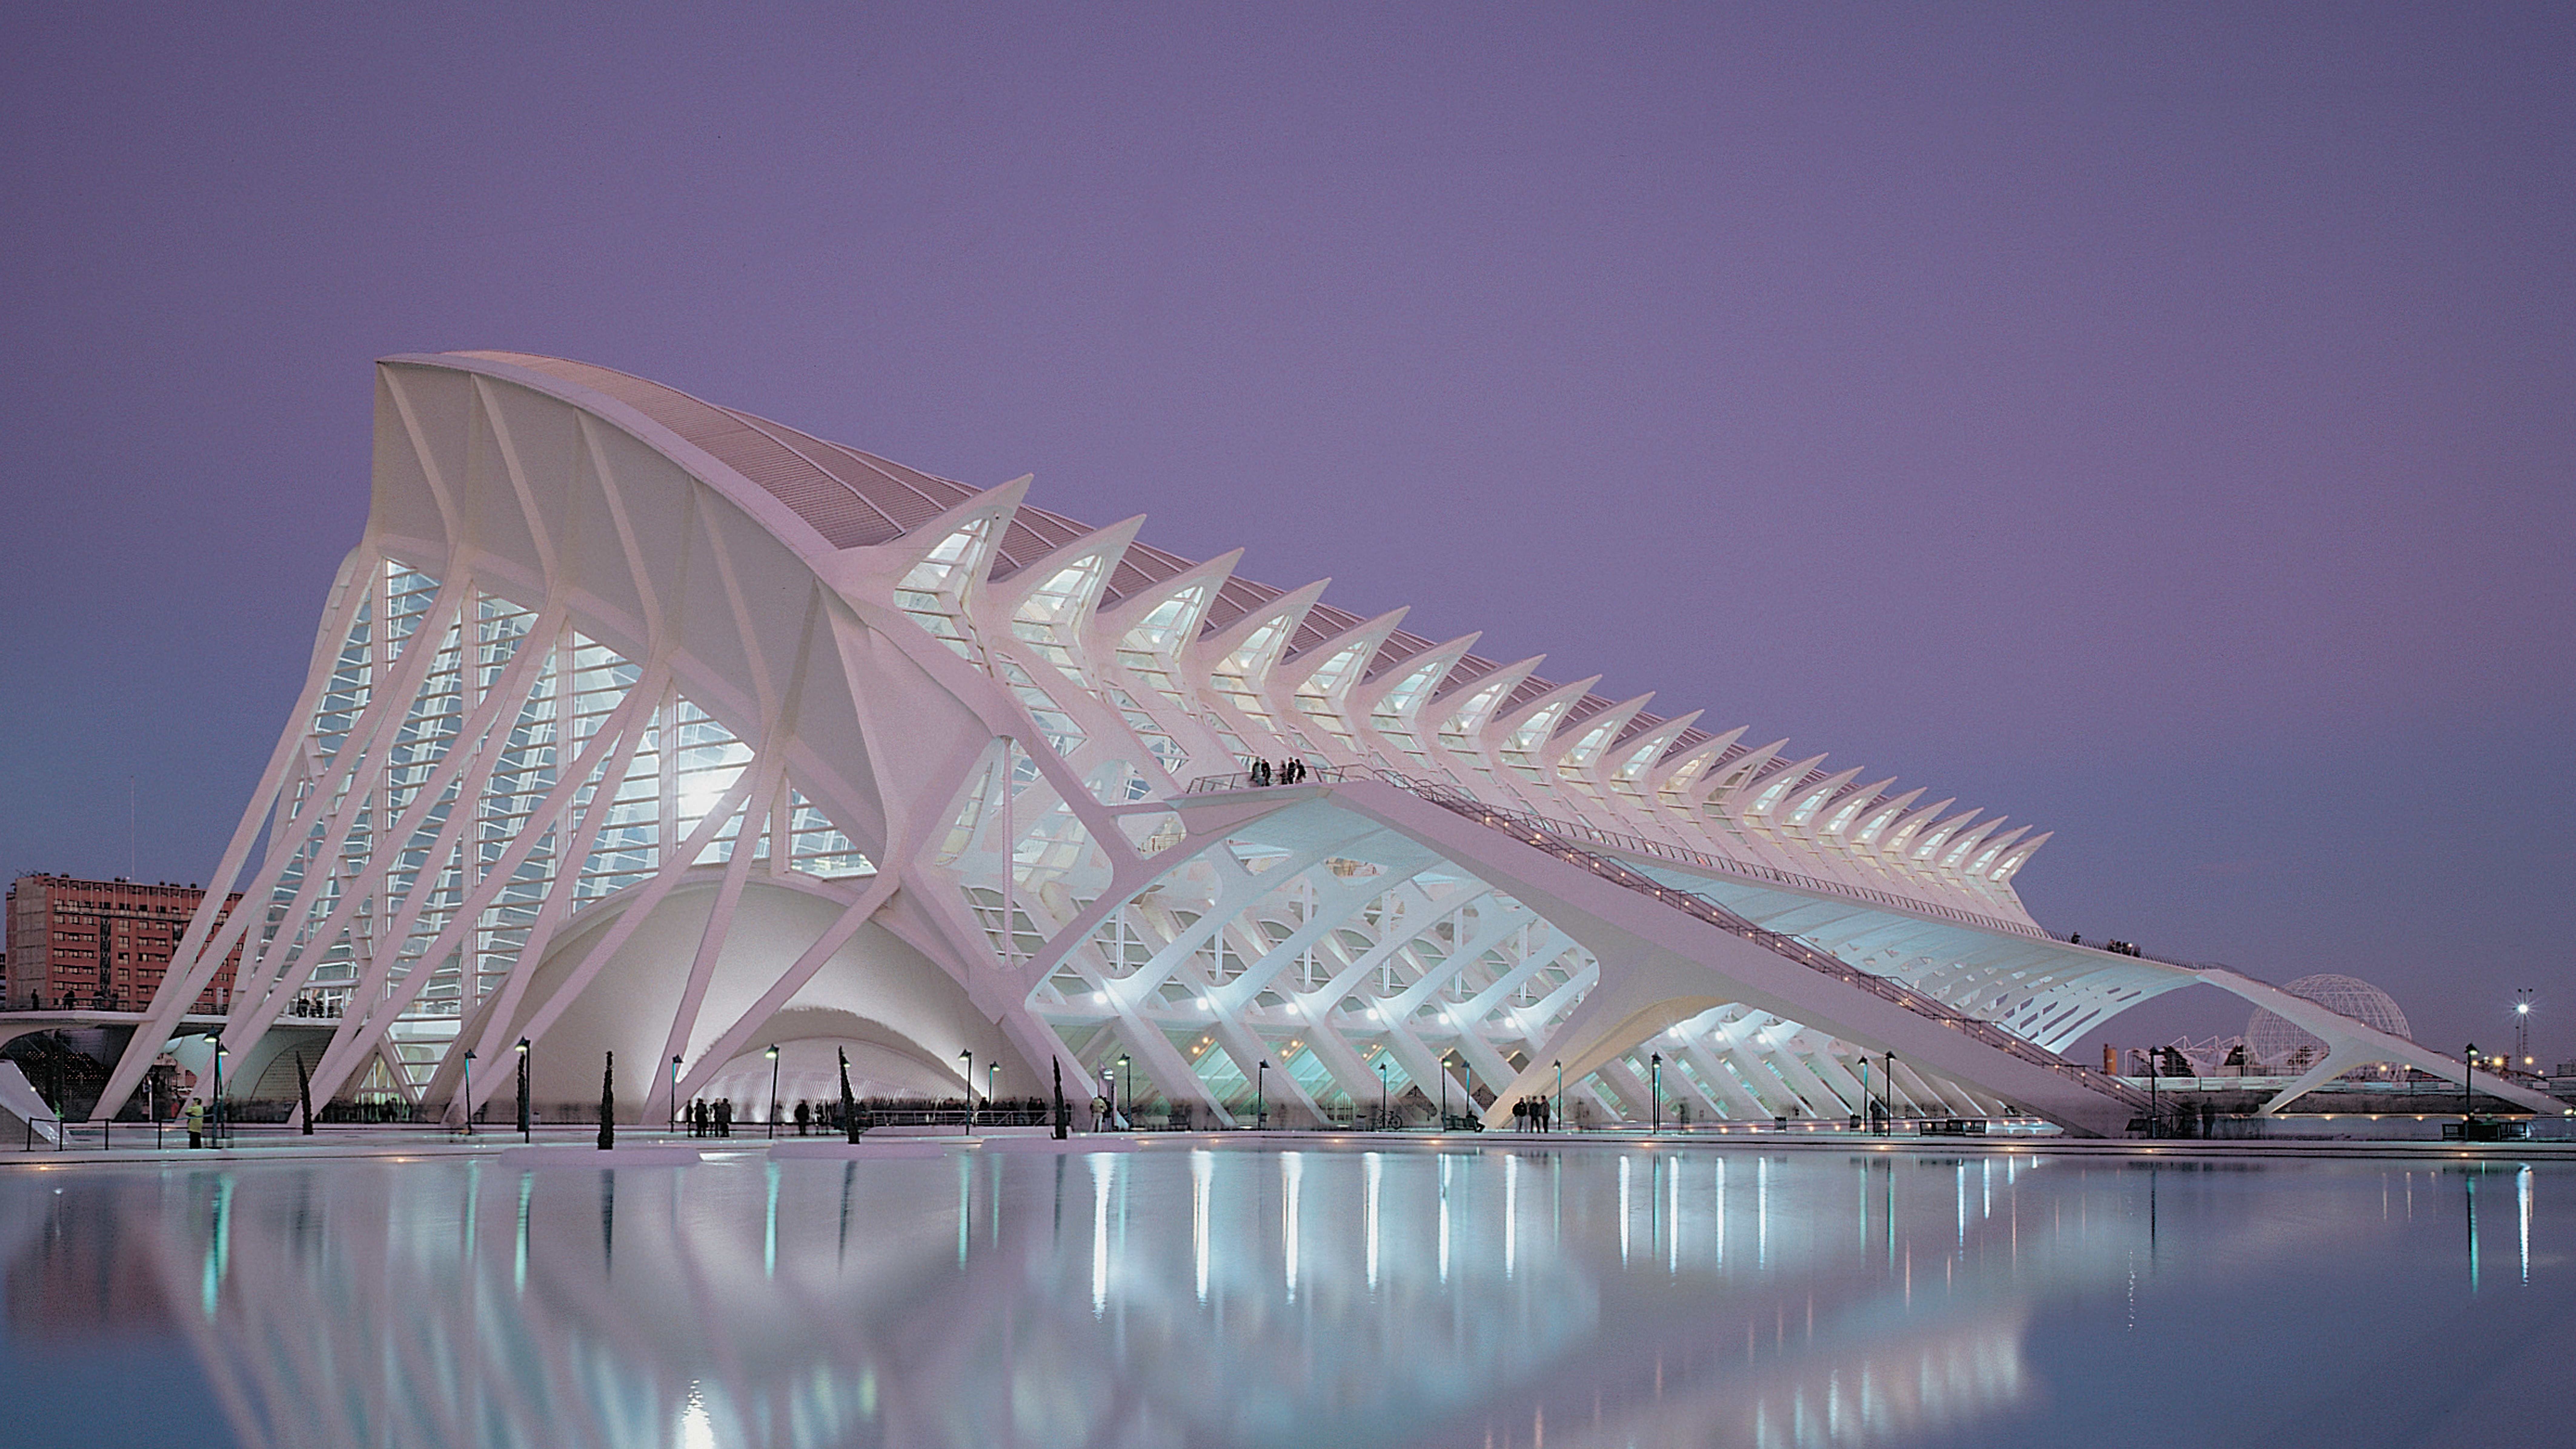 The Calatrava Case